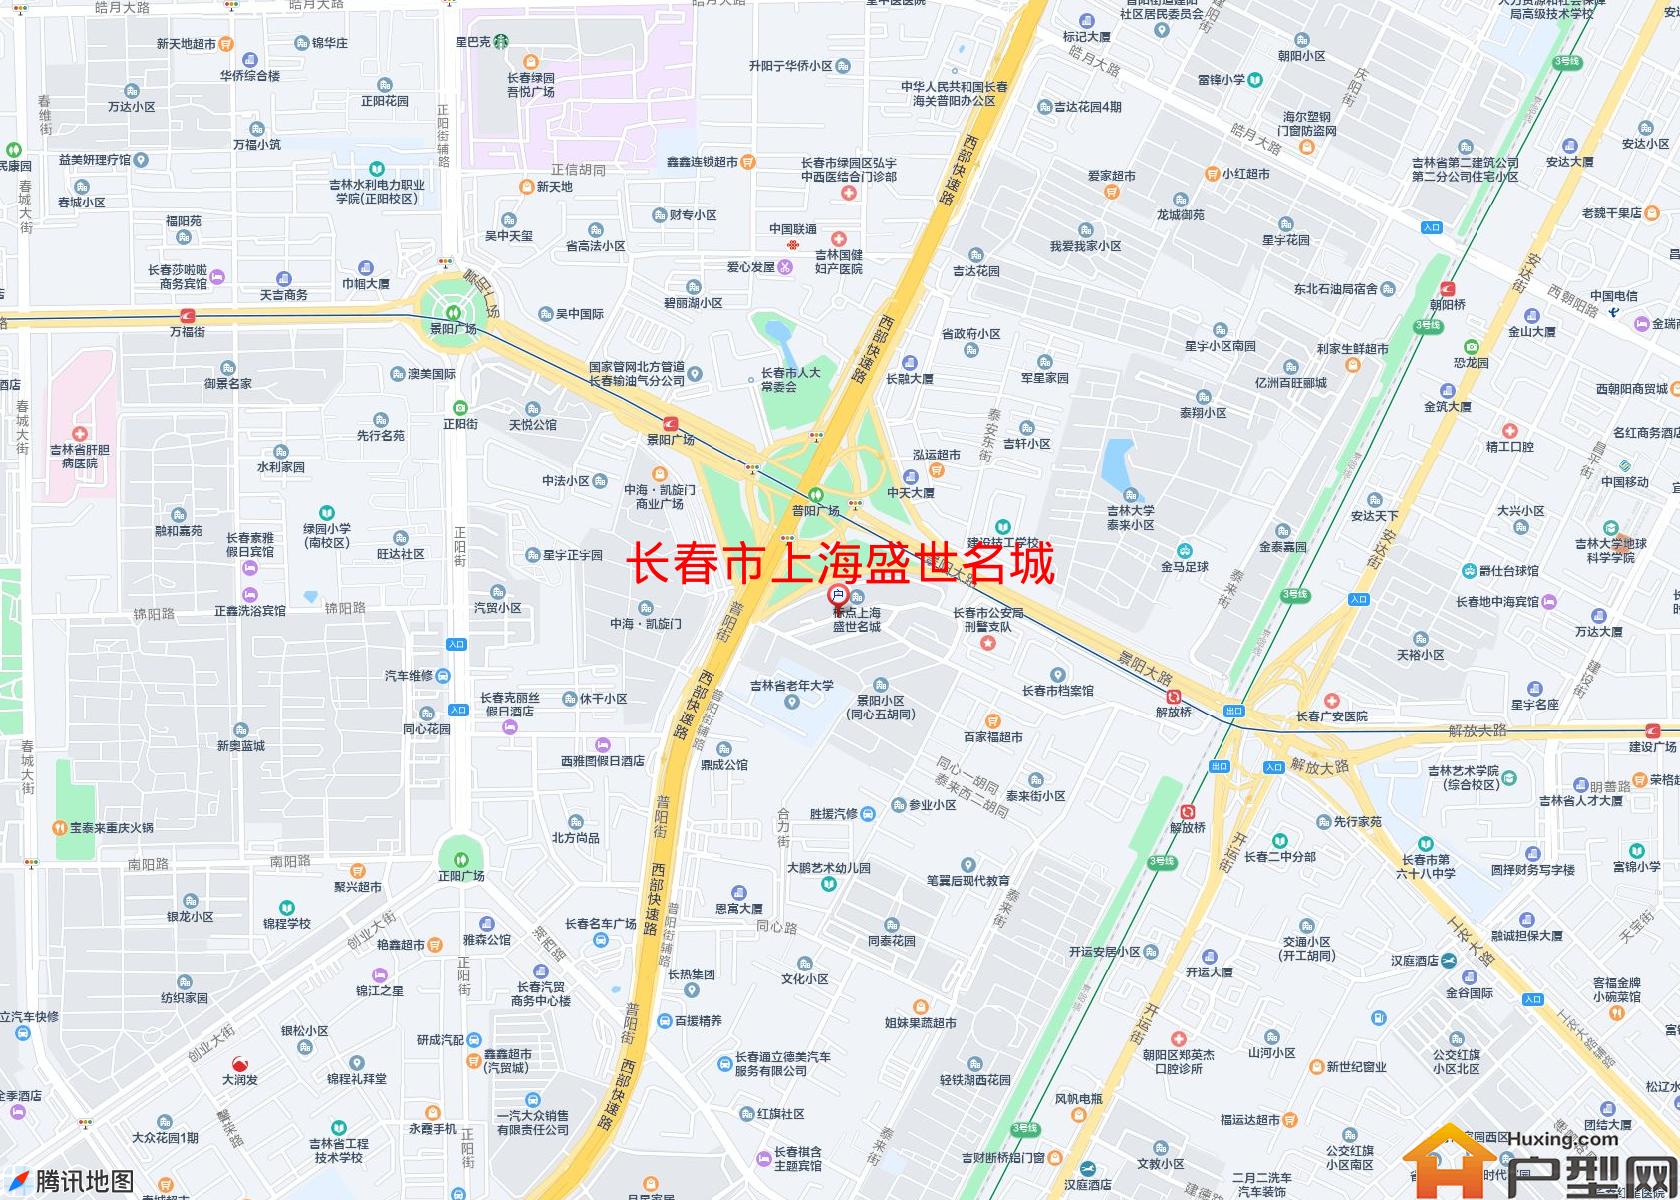 上海盛世名城小区 - 户型网